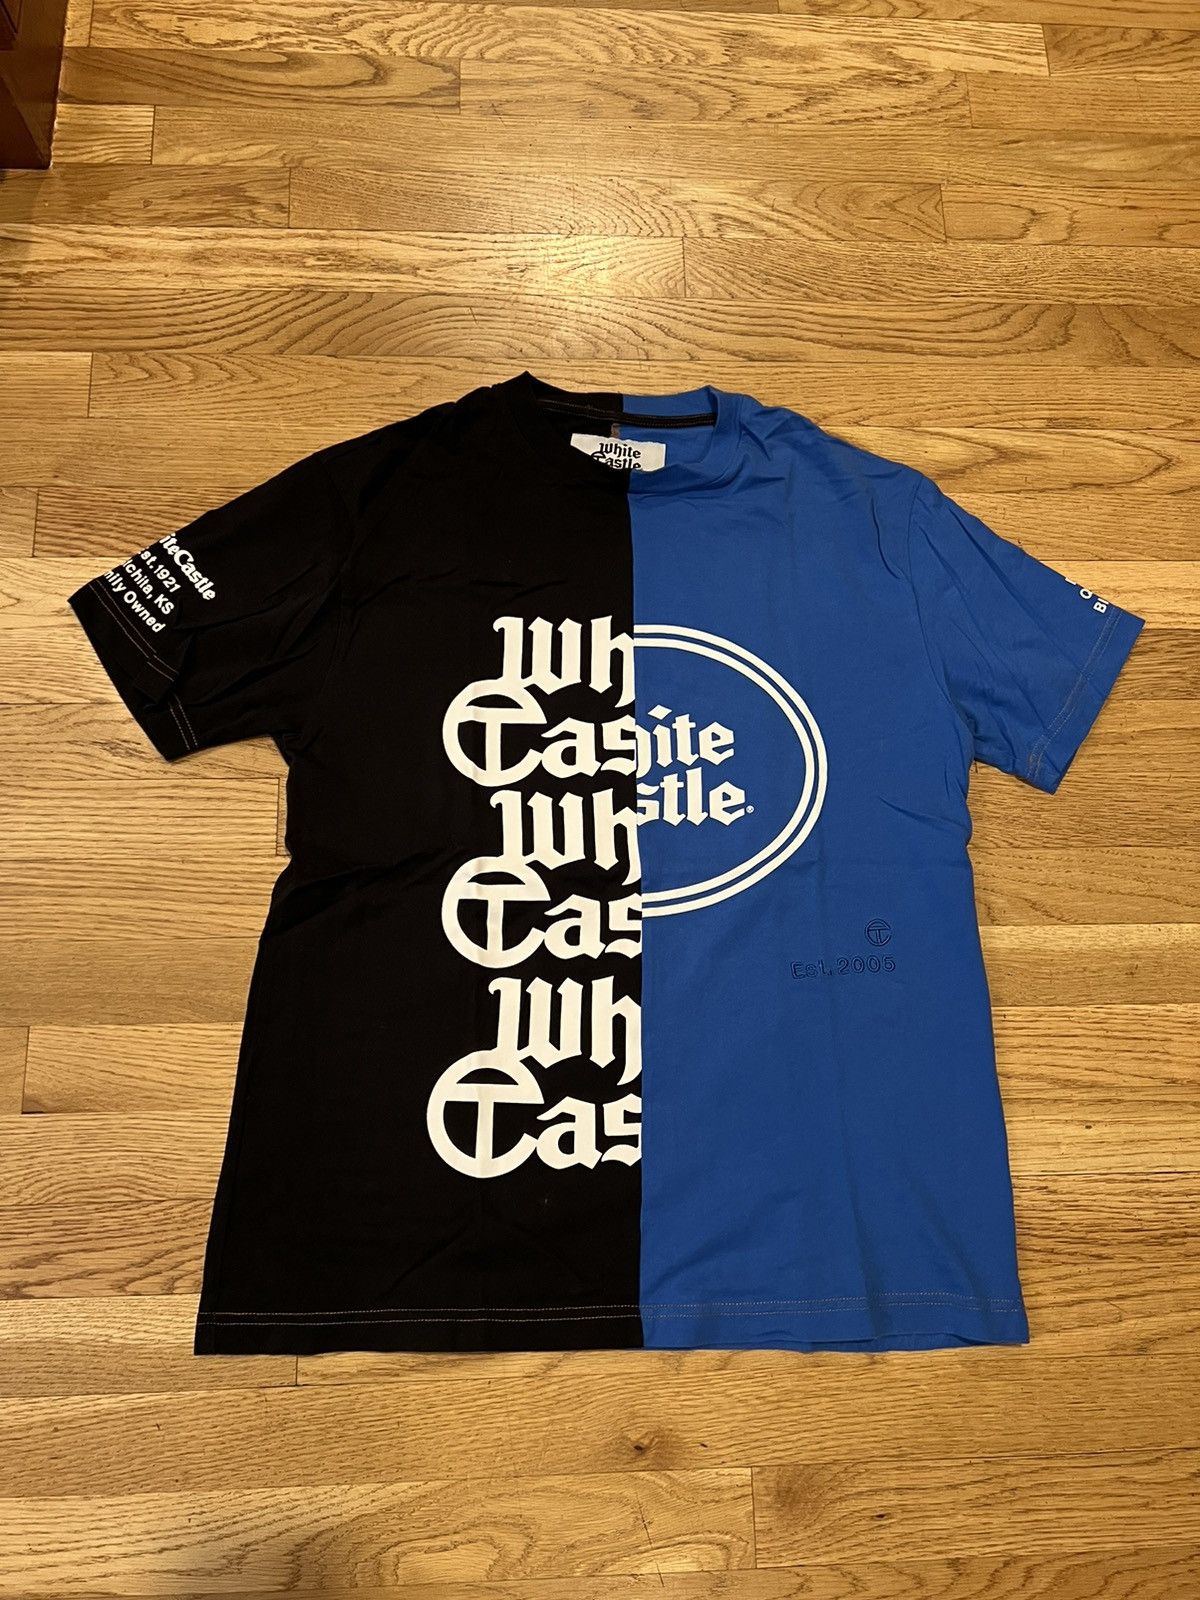 Telfar Telfar x White Castle 95th Anniversary Patchwork T Shirt | Grailed